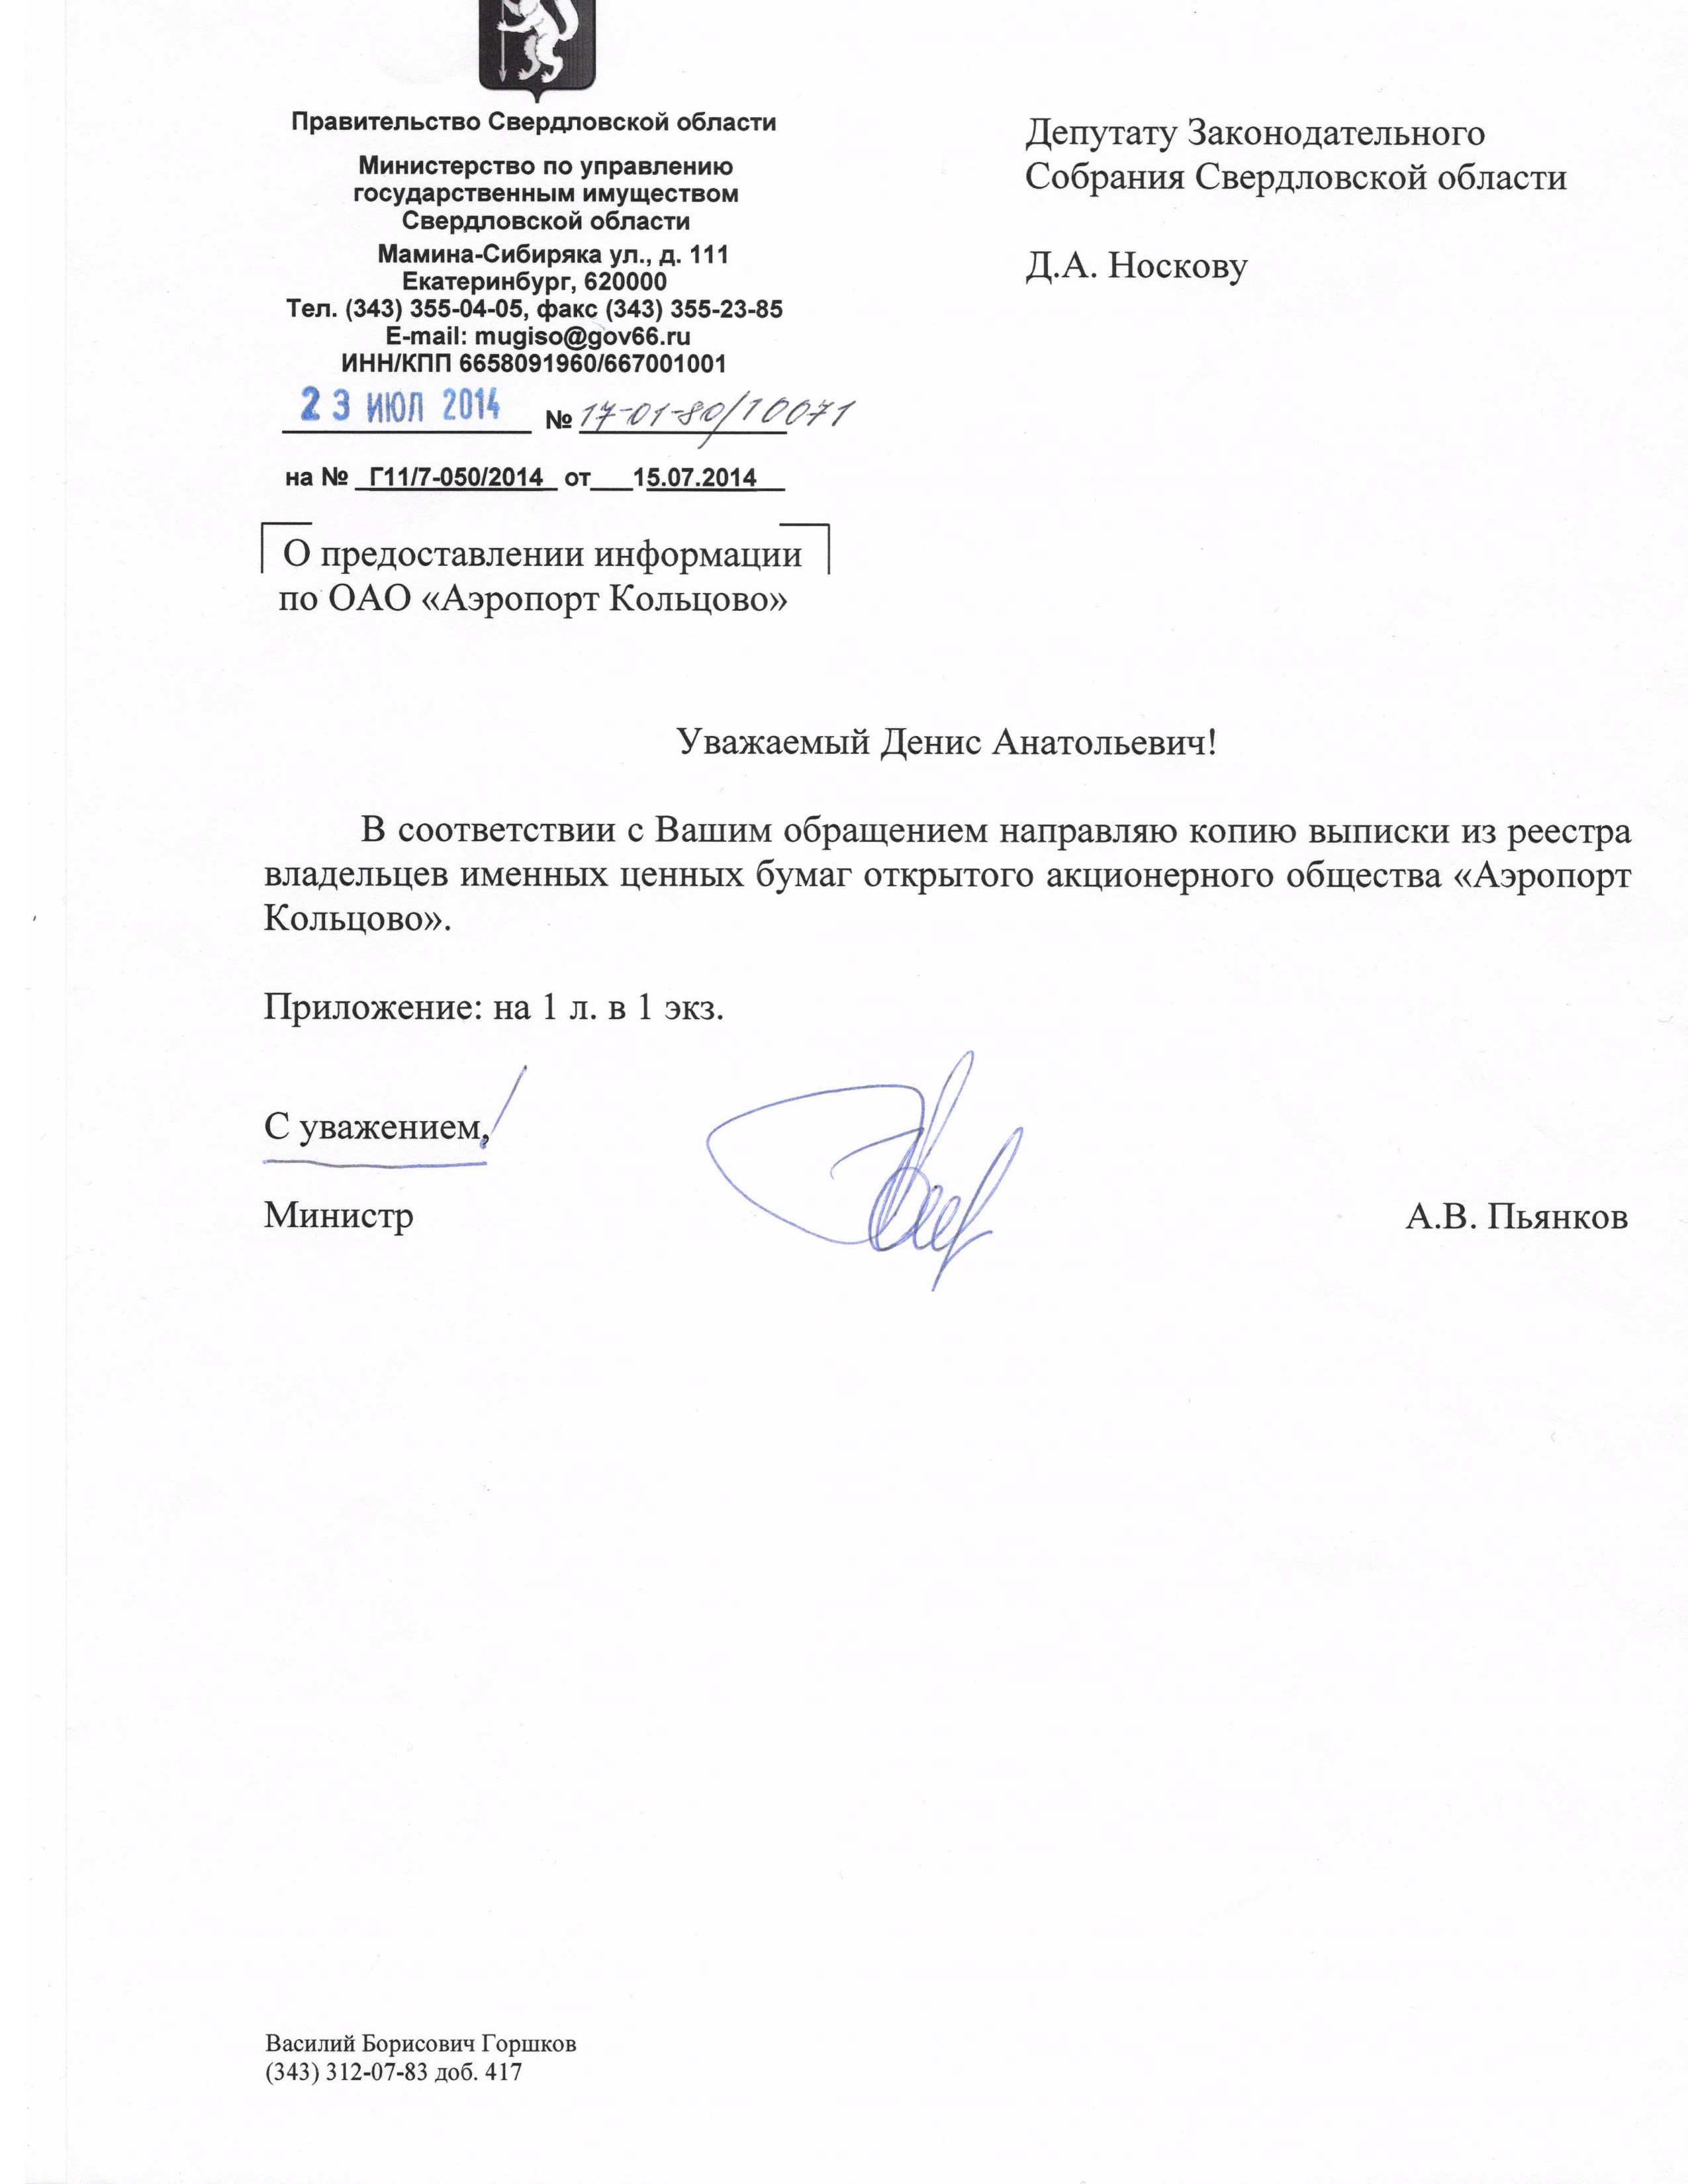 Либерал-демократы добились от министра Пьянкова официального подтверждения информации об акциях «Кольцово». ФОТО   - Фото 2